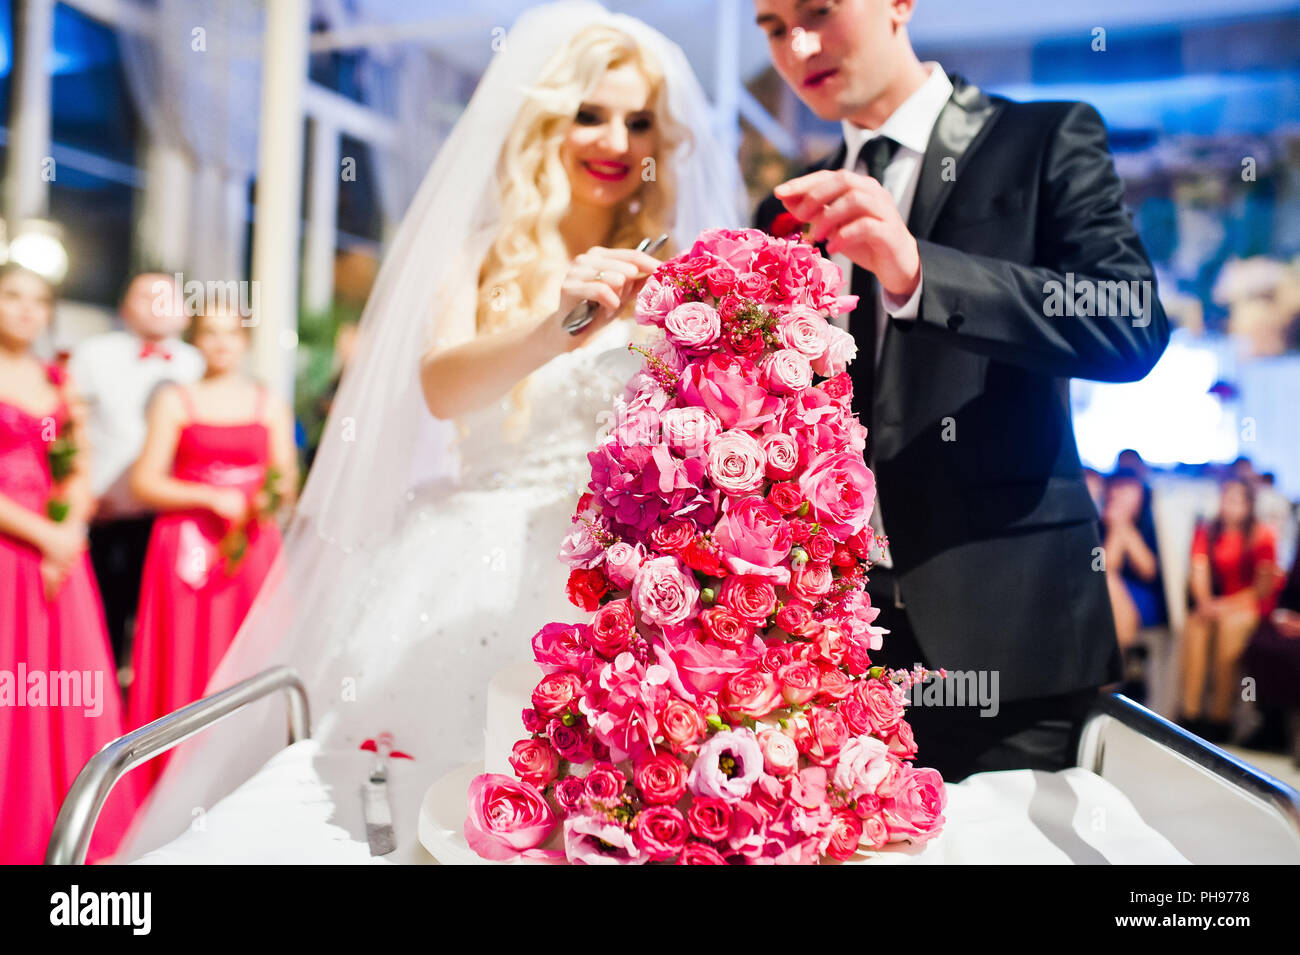 Wedding couple avec sweet gâteau de mariage avec des roses rose Banque D'Images